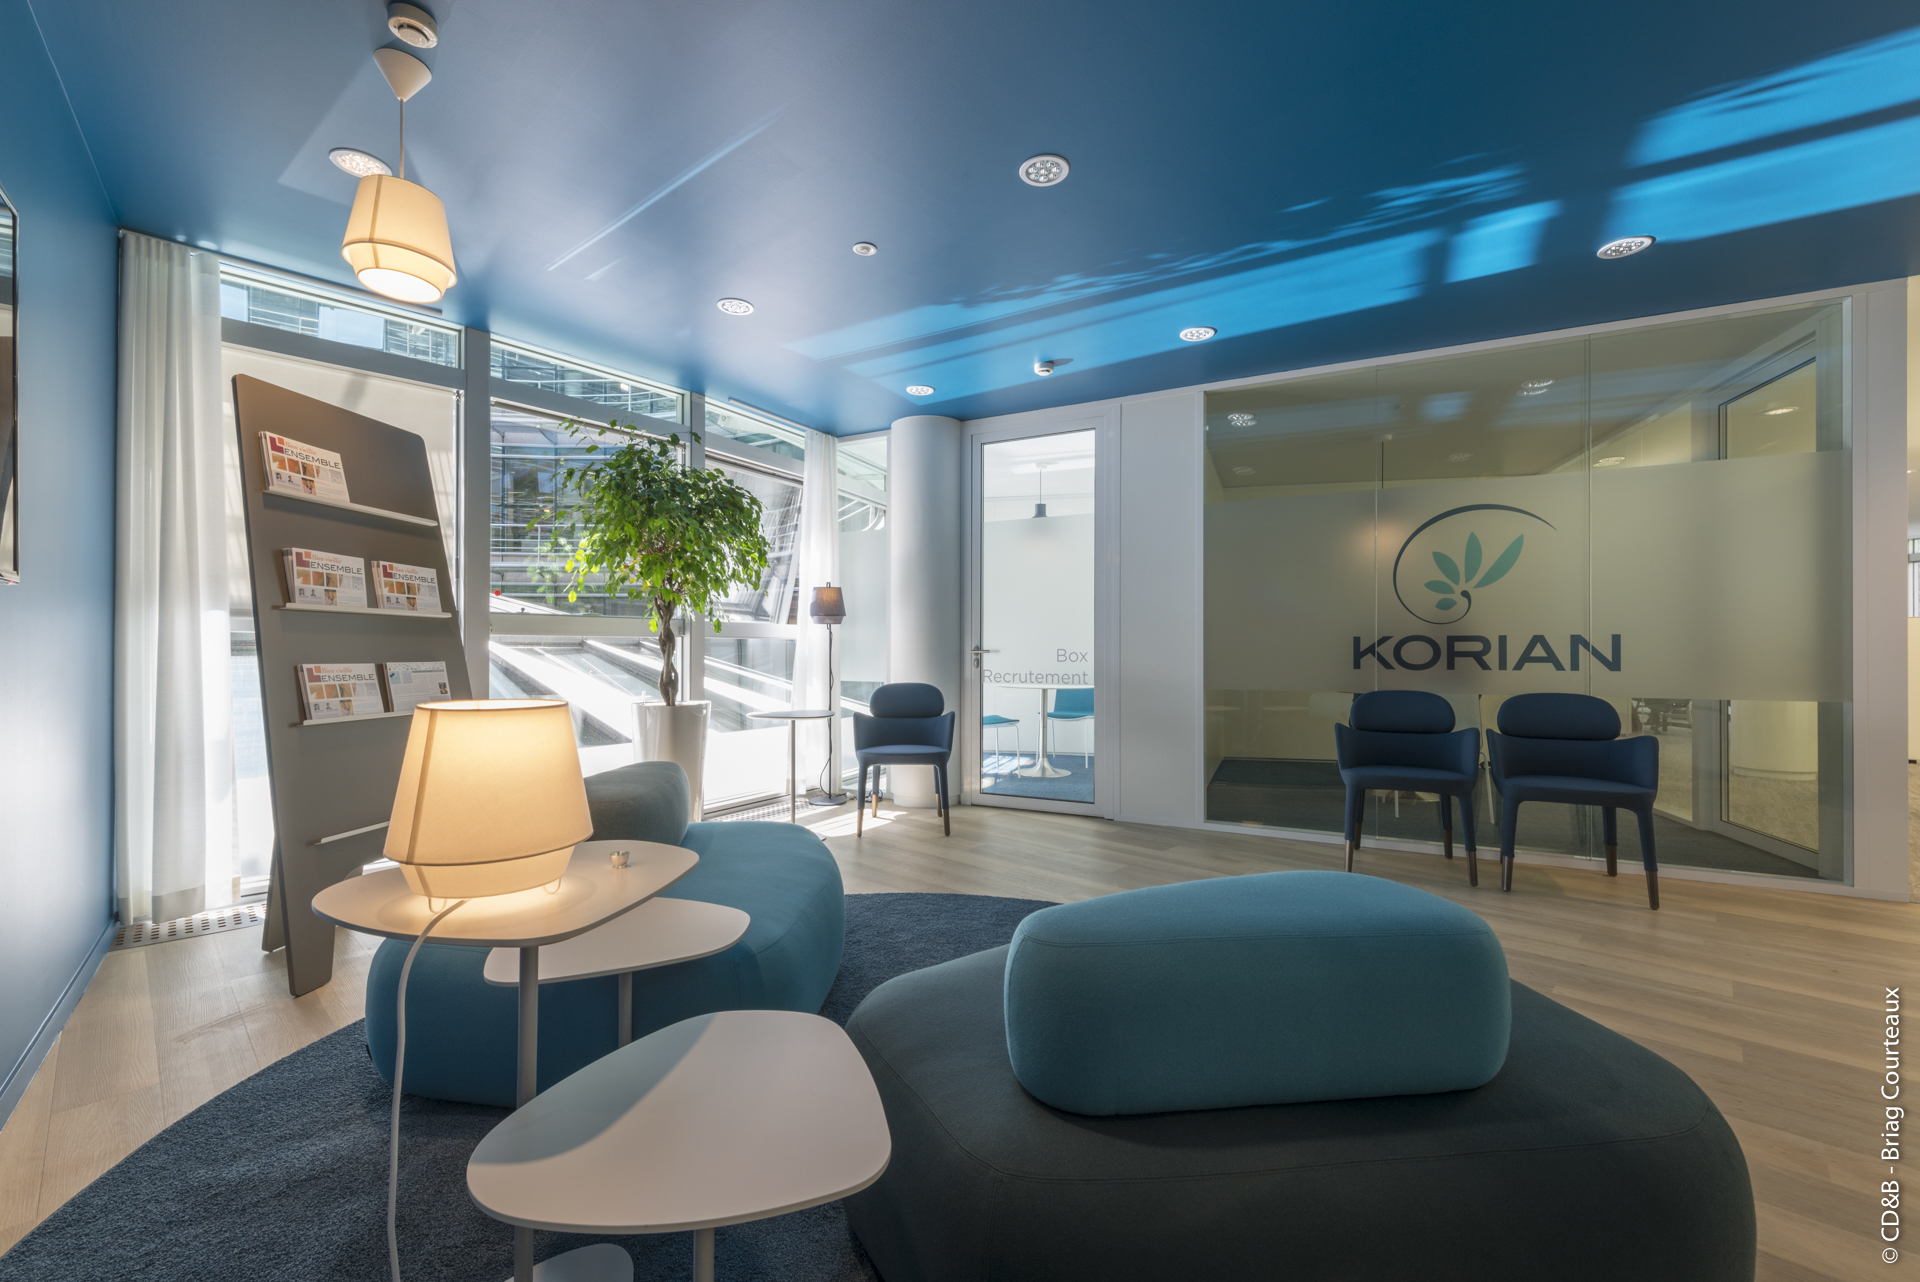 Conseil, aménagement, conception et réalisation des espaces de la société Korian par CDB, Meet you there.